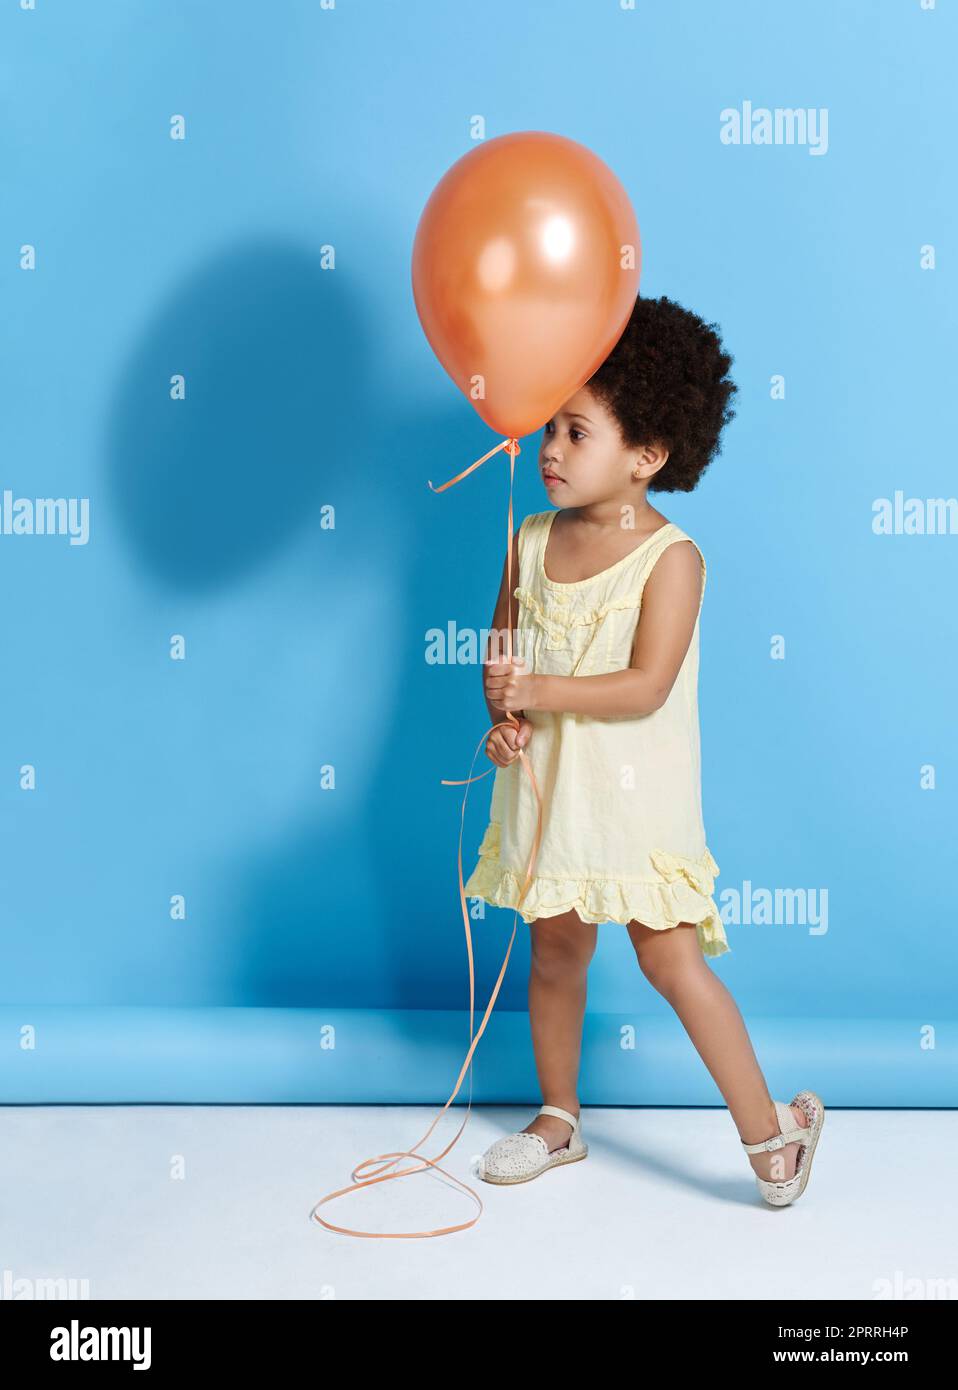 Sollen wir Mr. Balloon tanzen? Ein niedliches kleines Mädchen, das einen Ballon über einem blauen Hintergrund hält. Stockfoto